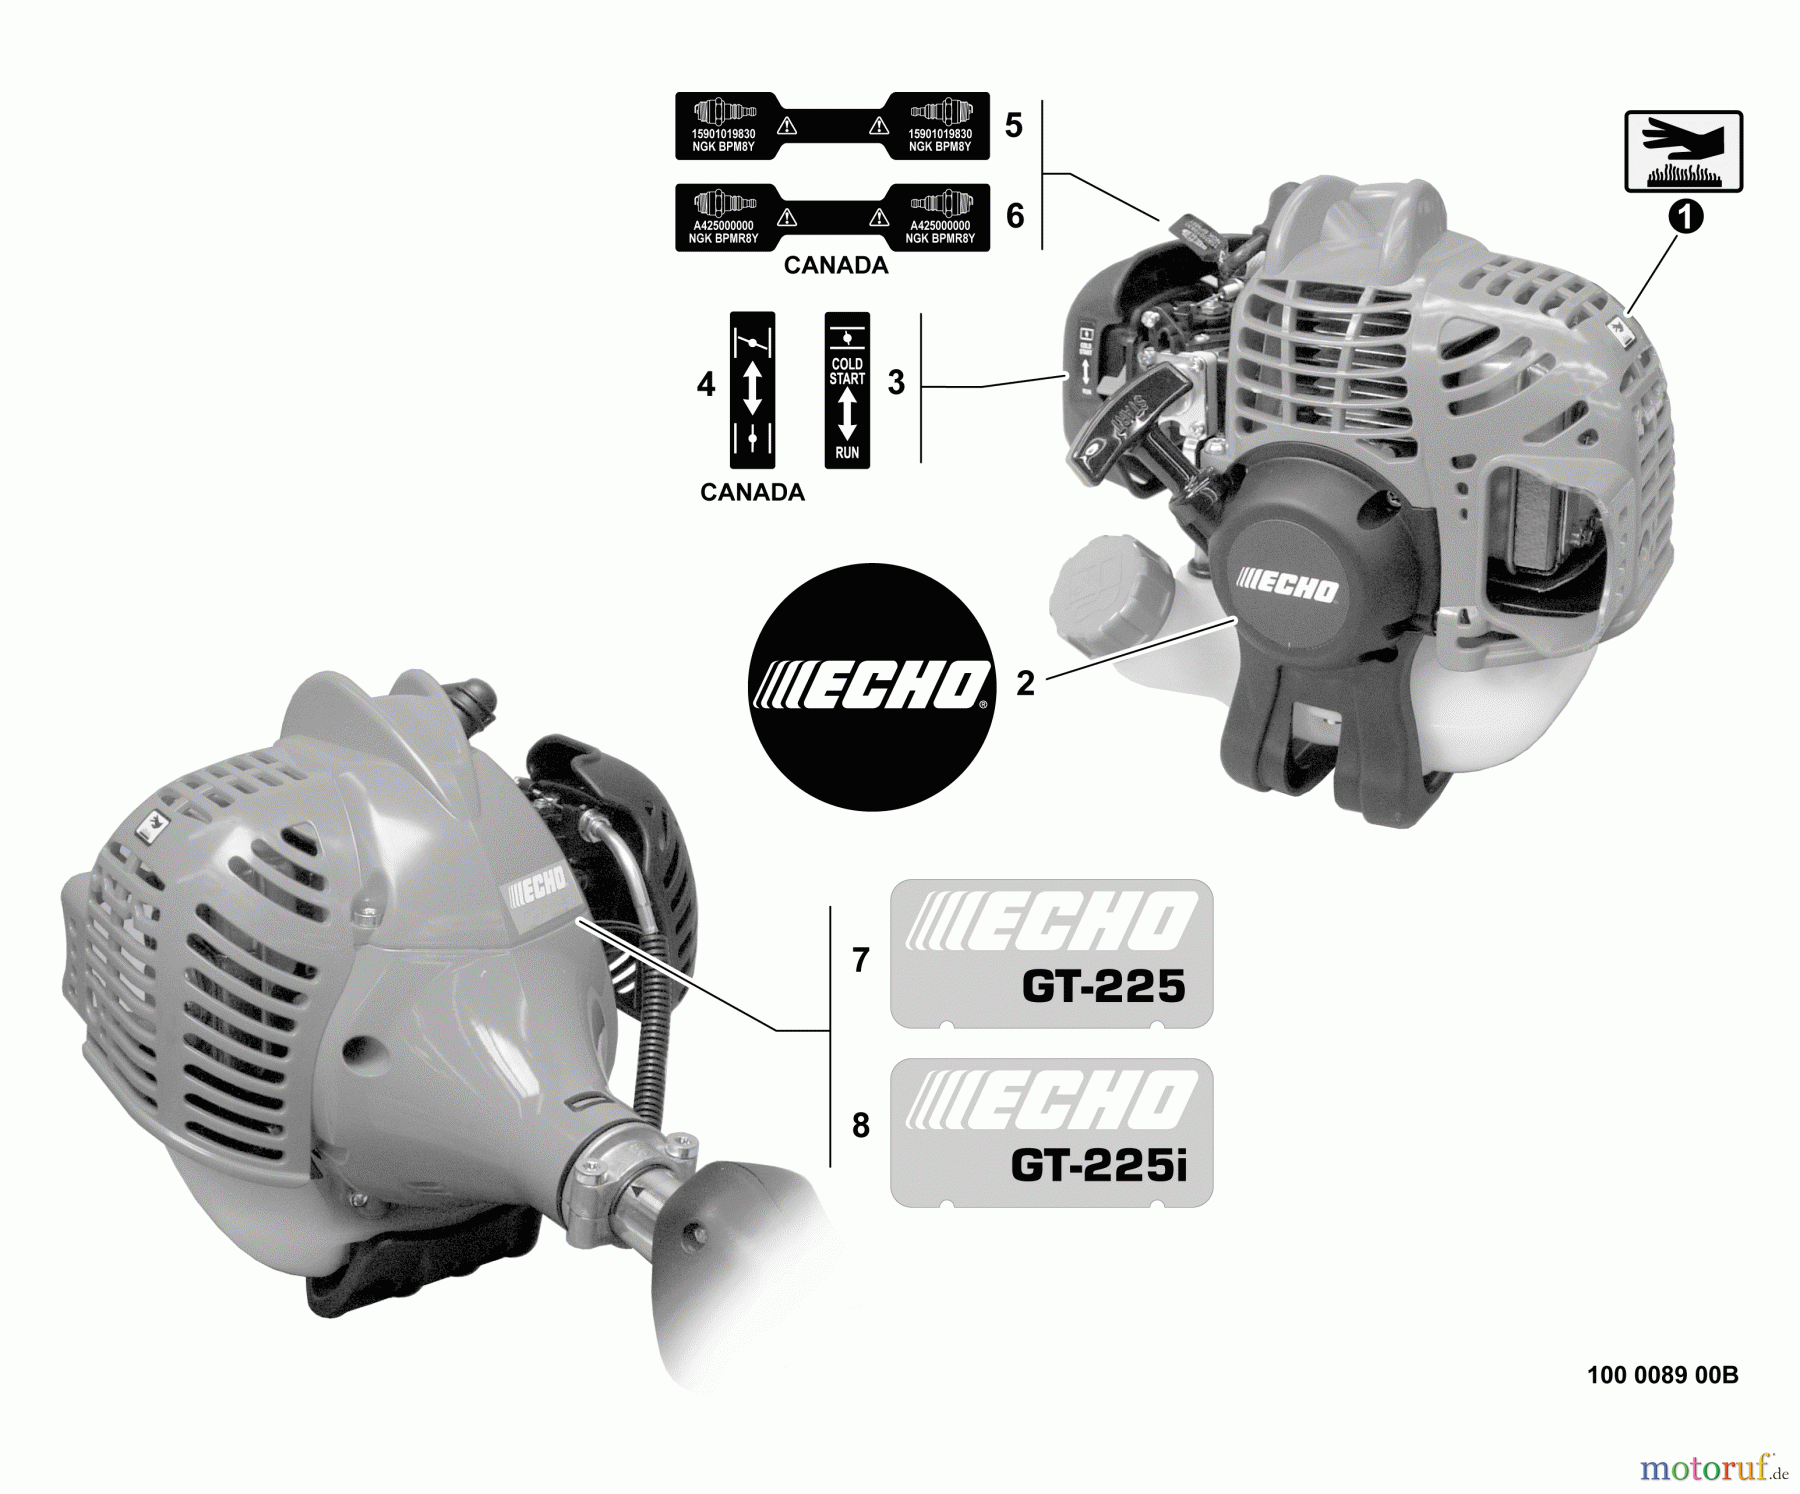  Echo Trimmer, Faden / Bürste GT-225i - Echo String Trimmer, S/N:S54711001001 - S54711999999 Labels